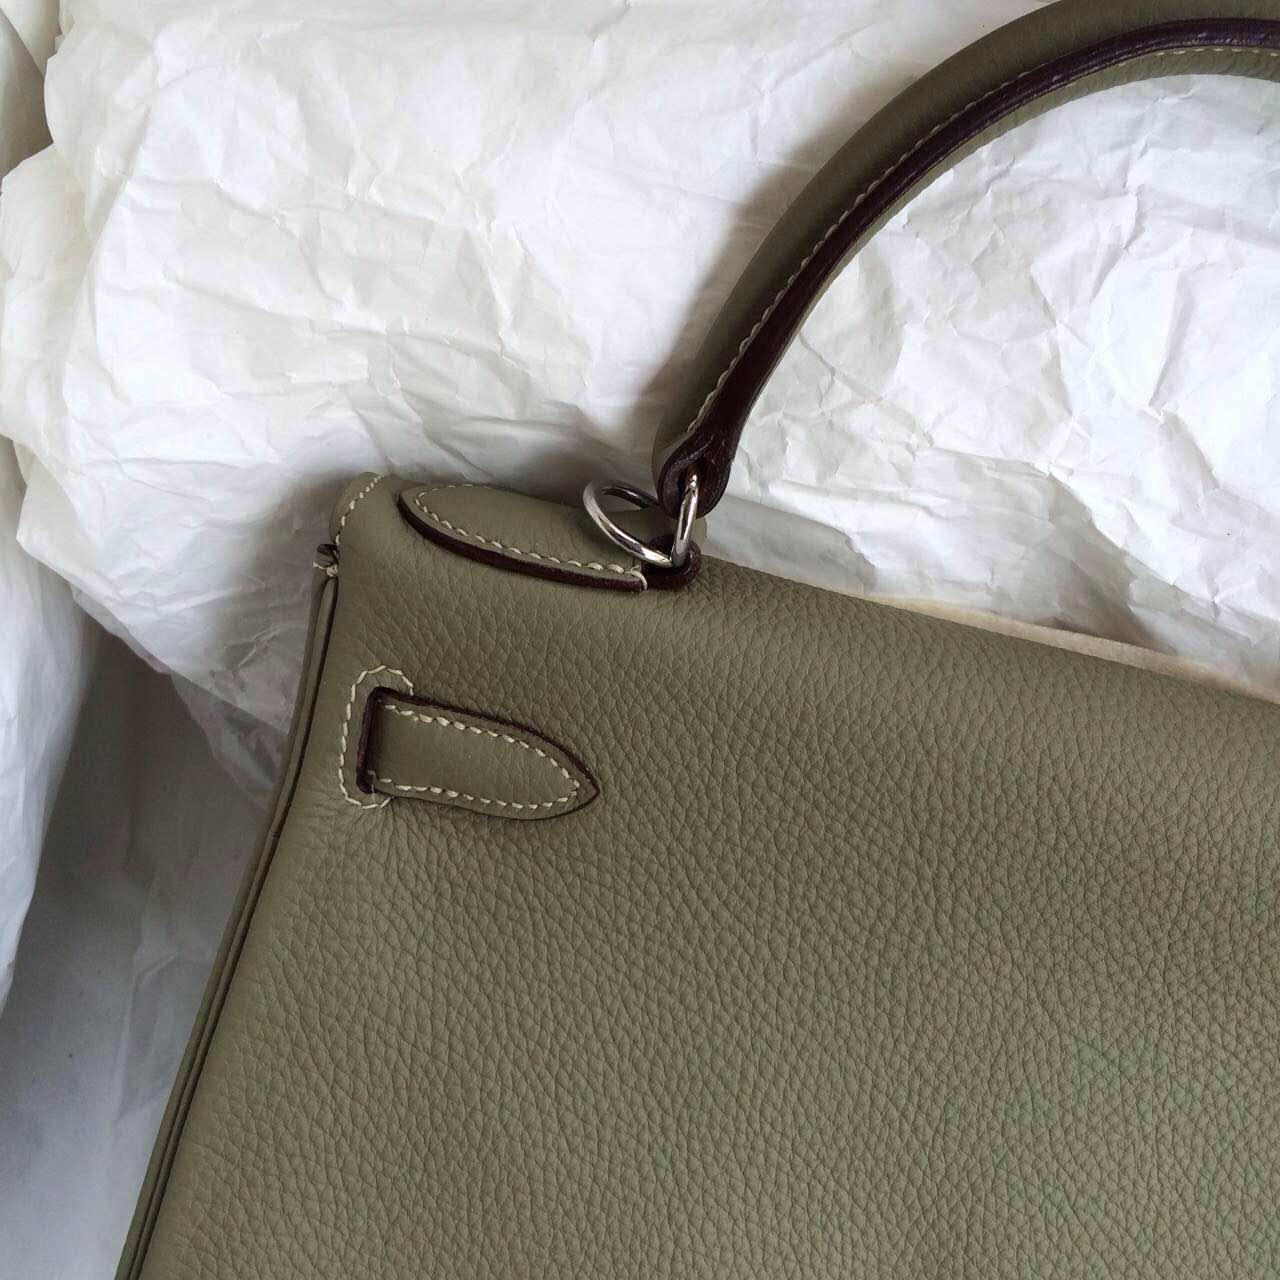 28cm Hermes Kelly Bag Retourne CK64 Celadon Color Togo Calfskin Leather Handbag